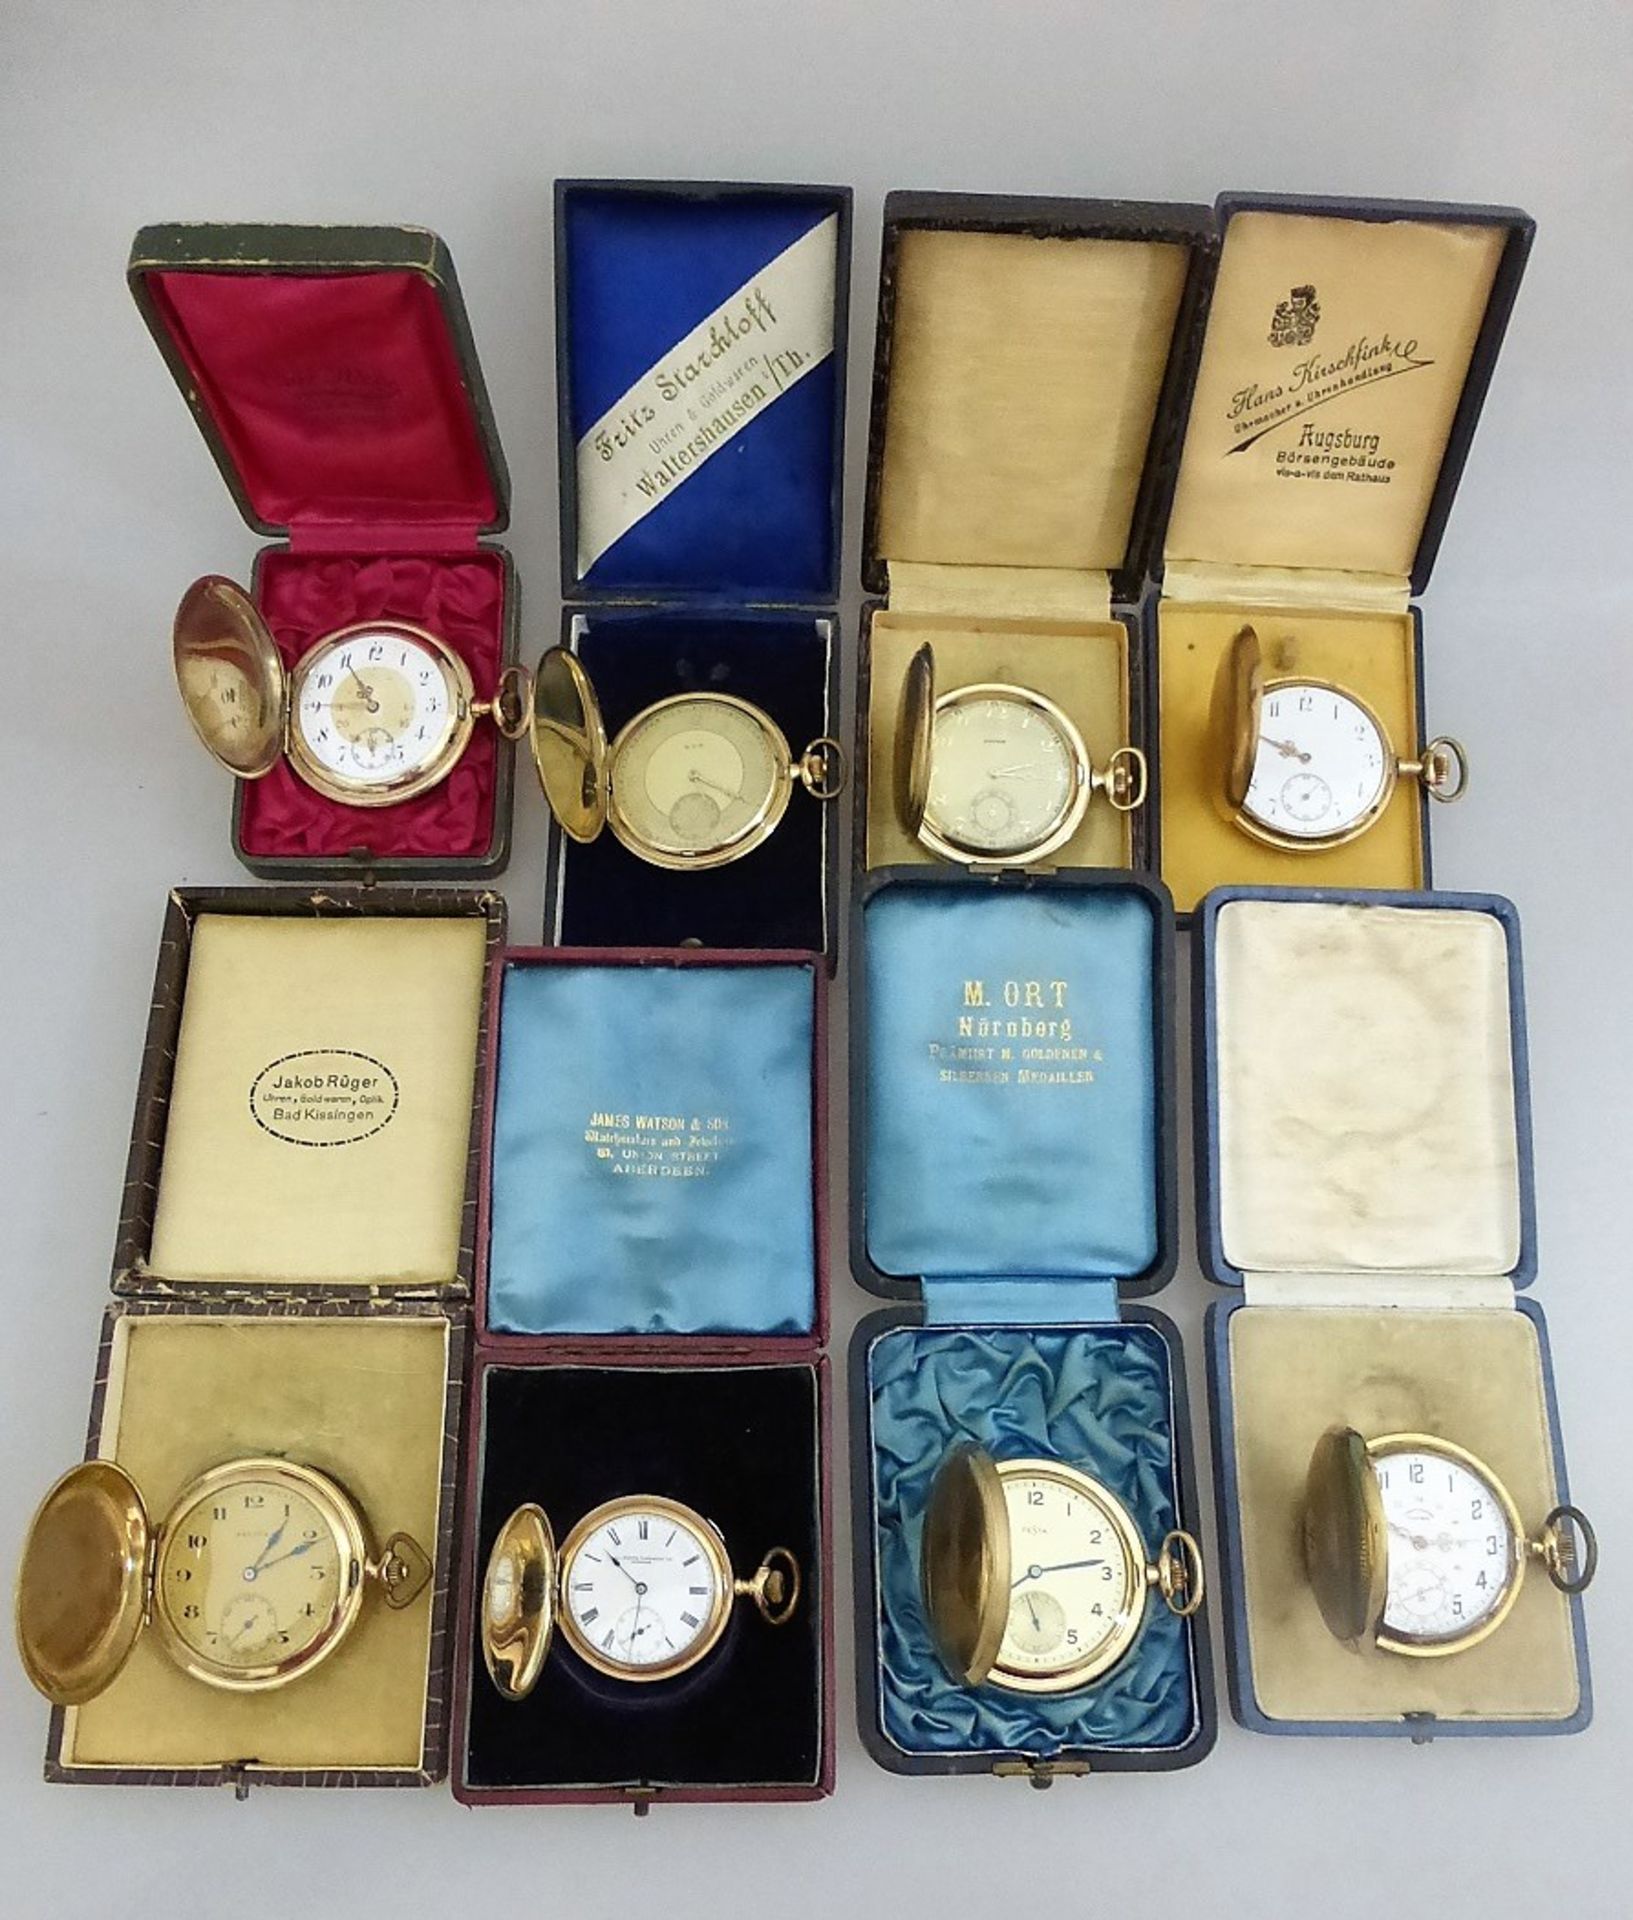 Sammlung von 8 Sprungdeckeltaschenuhren, alle vergoldet, jeweils im Etui, u.a. Drusus, - Image 2 of 2